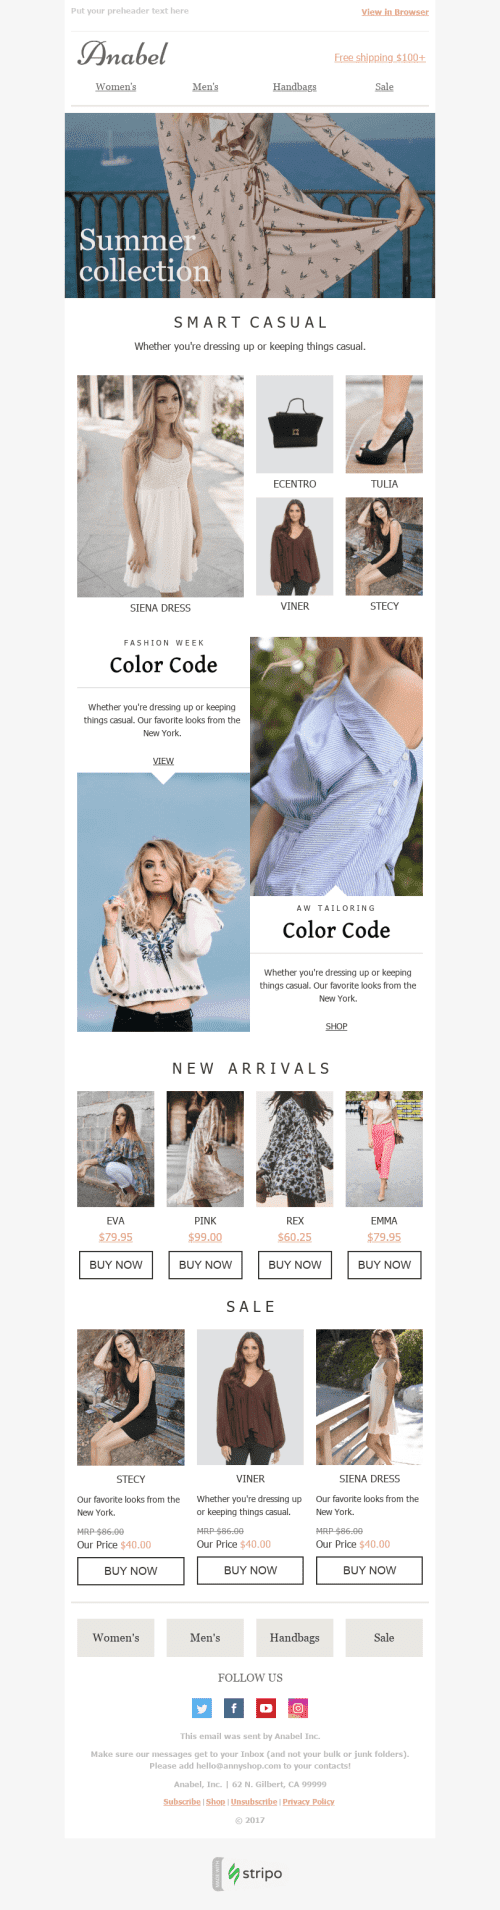 Plantilla de correo electrónico "Colores brillantes" de Promoción para la industria de Moda Vista de escritorio